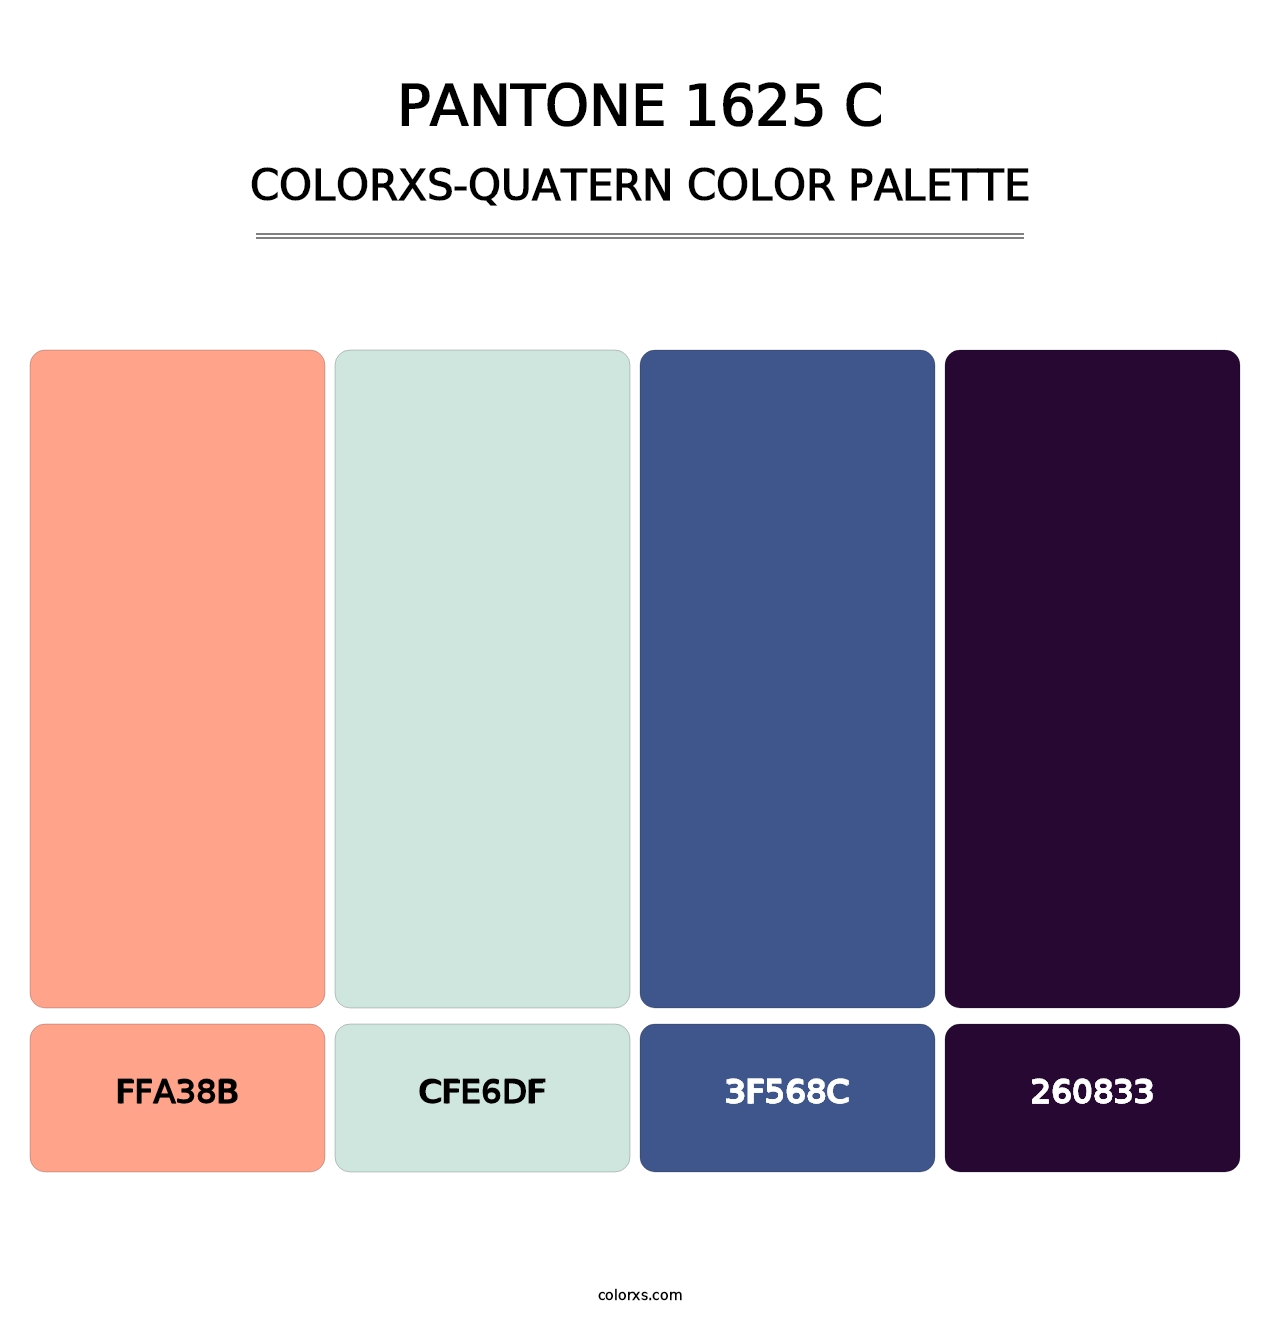 PANTONE 1625 C - Colorxs Quatern Palette